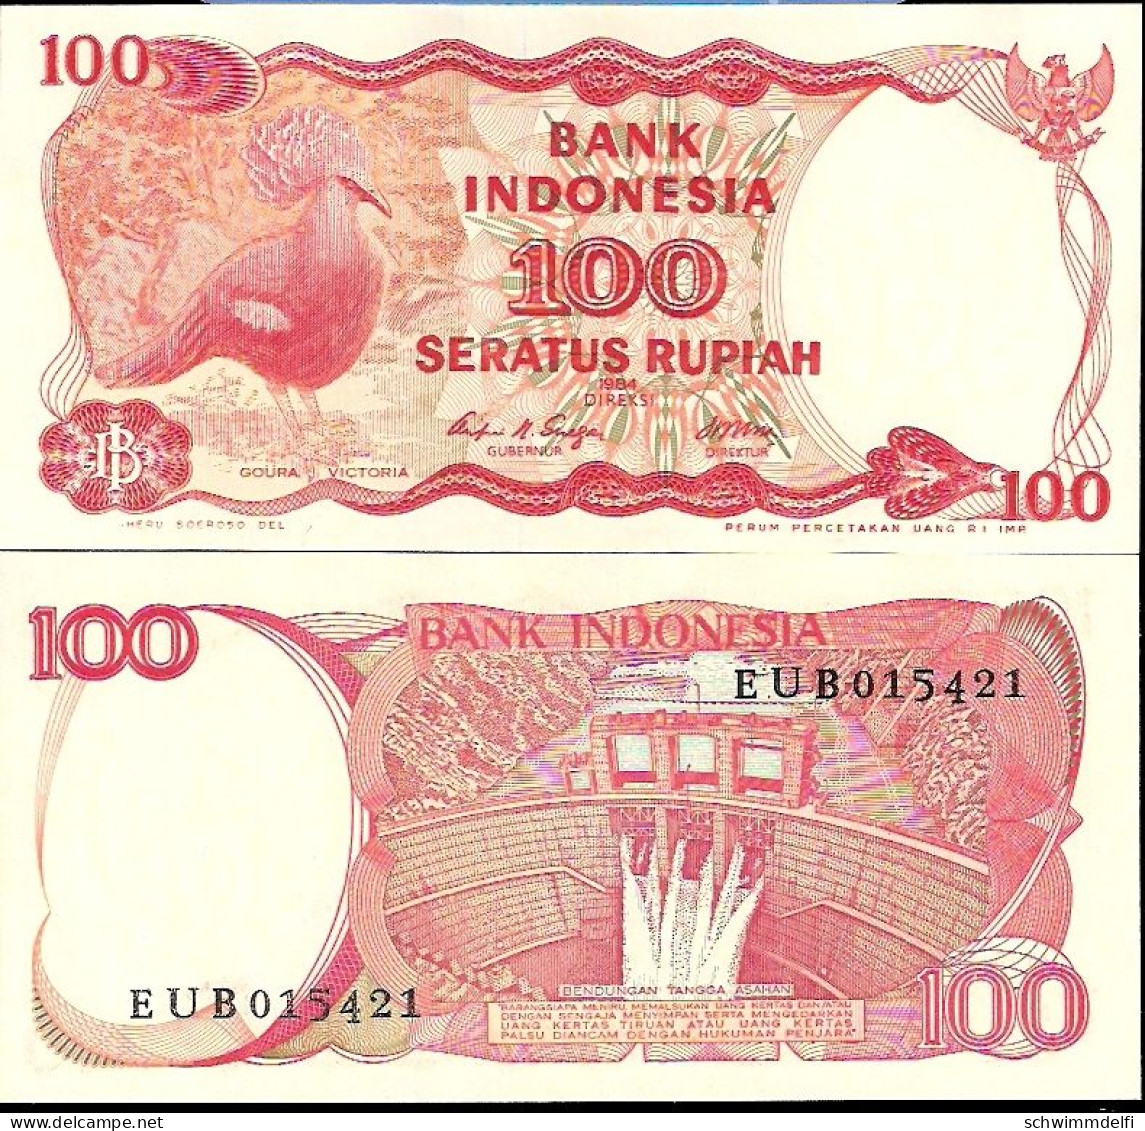 INDONESIEN - INDONESIA - 100 (SERATUS) RUPIAH 1984 - SIN CIRCULAR - UNZ. - UNC. - Indonesien